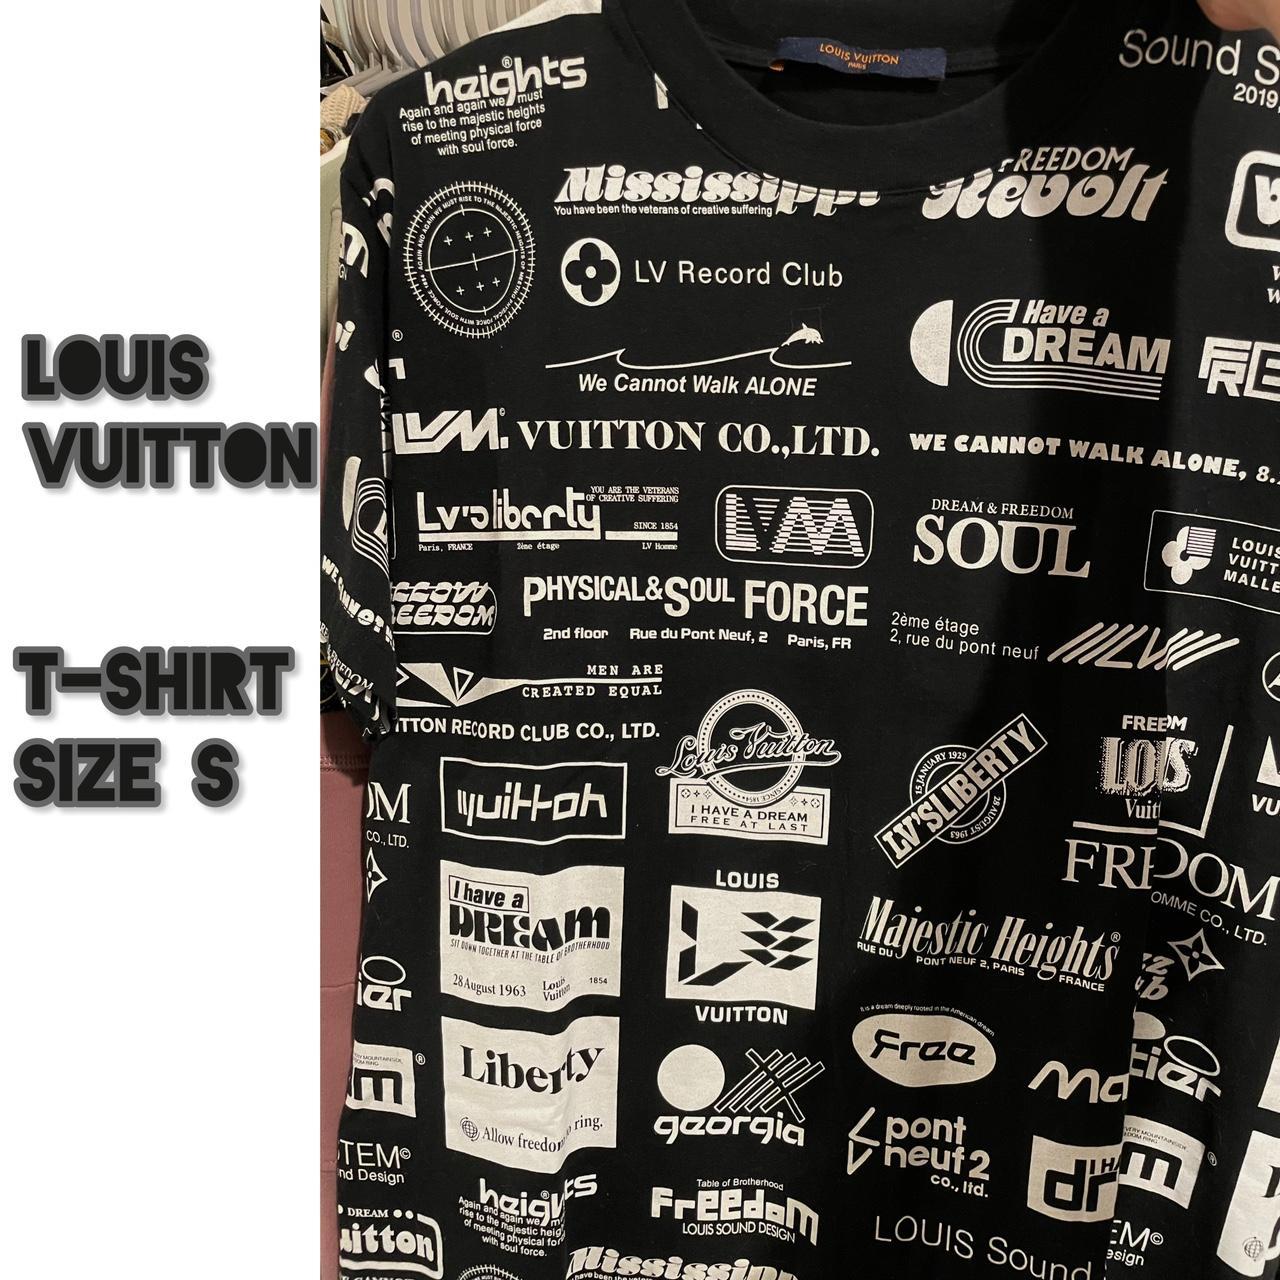 Louis Vuitton Print T-Shirt White. Size S0